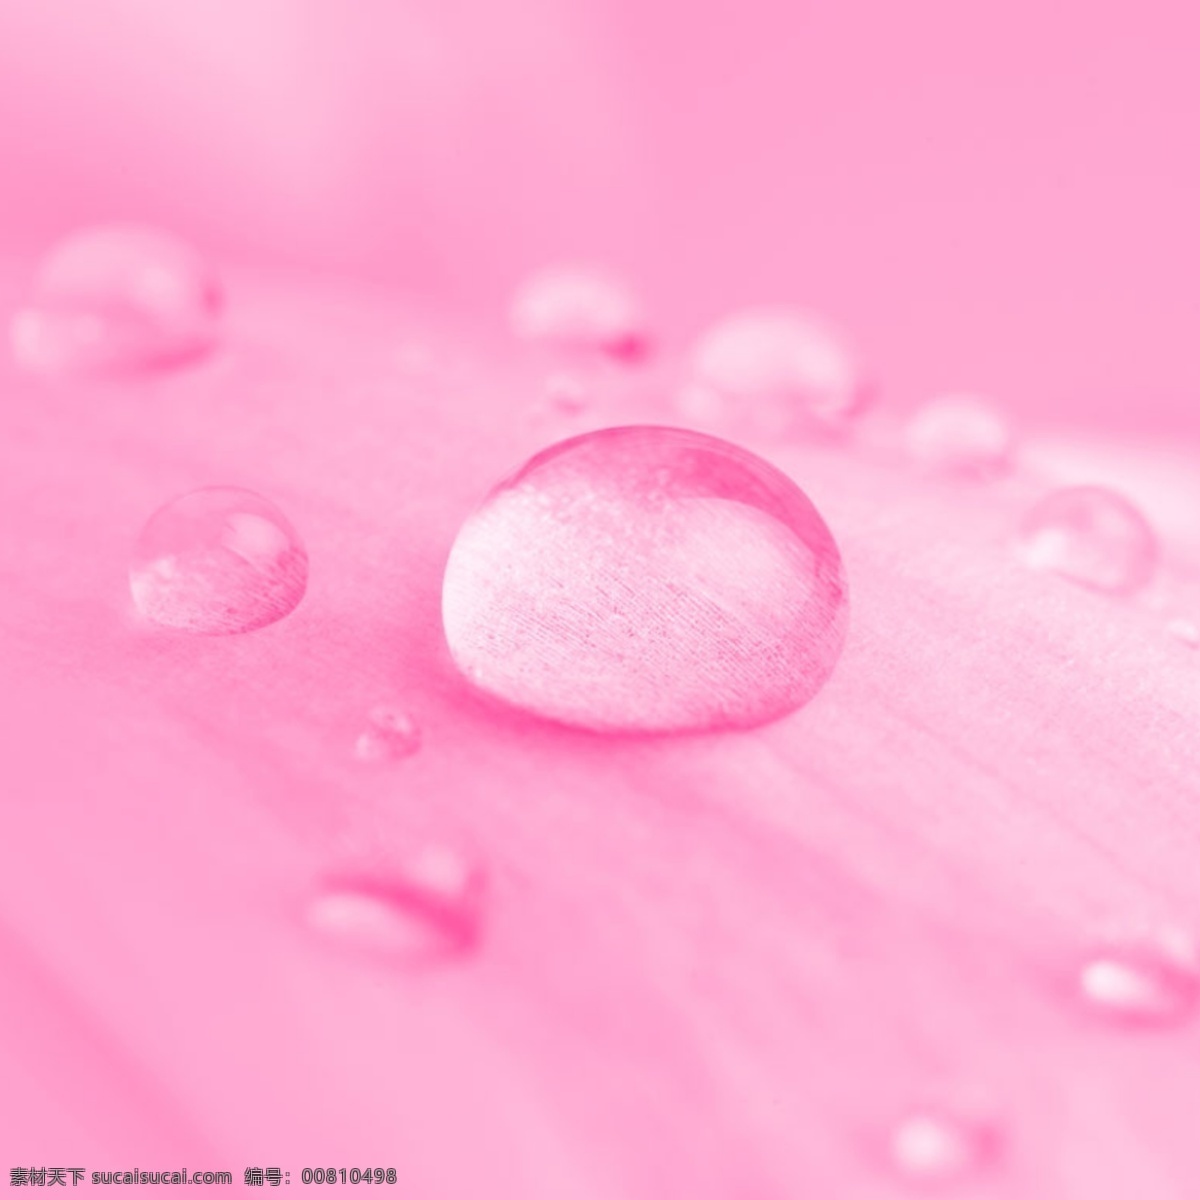 粉色 唯美 水滴 背景 图 简约 清爽 绿色 花朵 女装 清新 护肤品